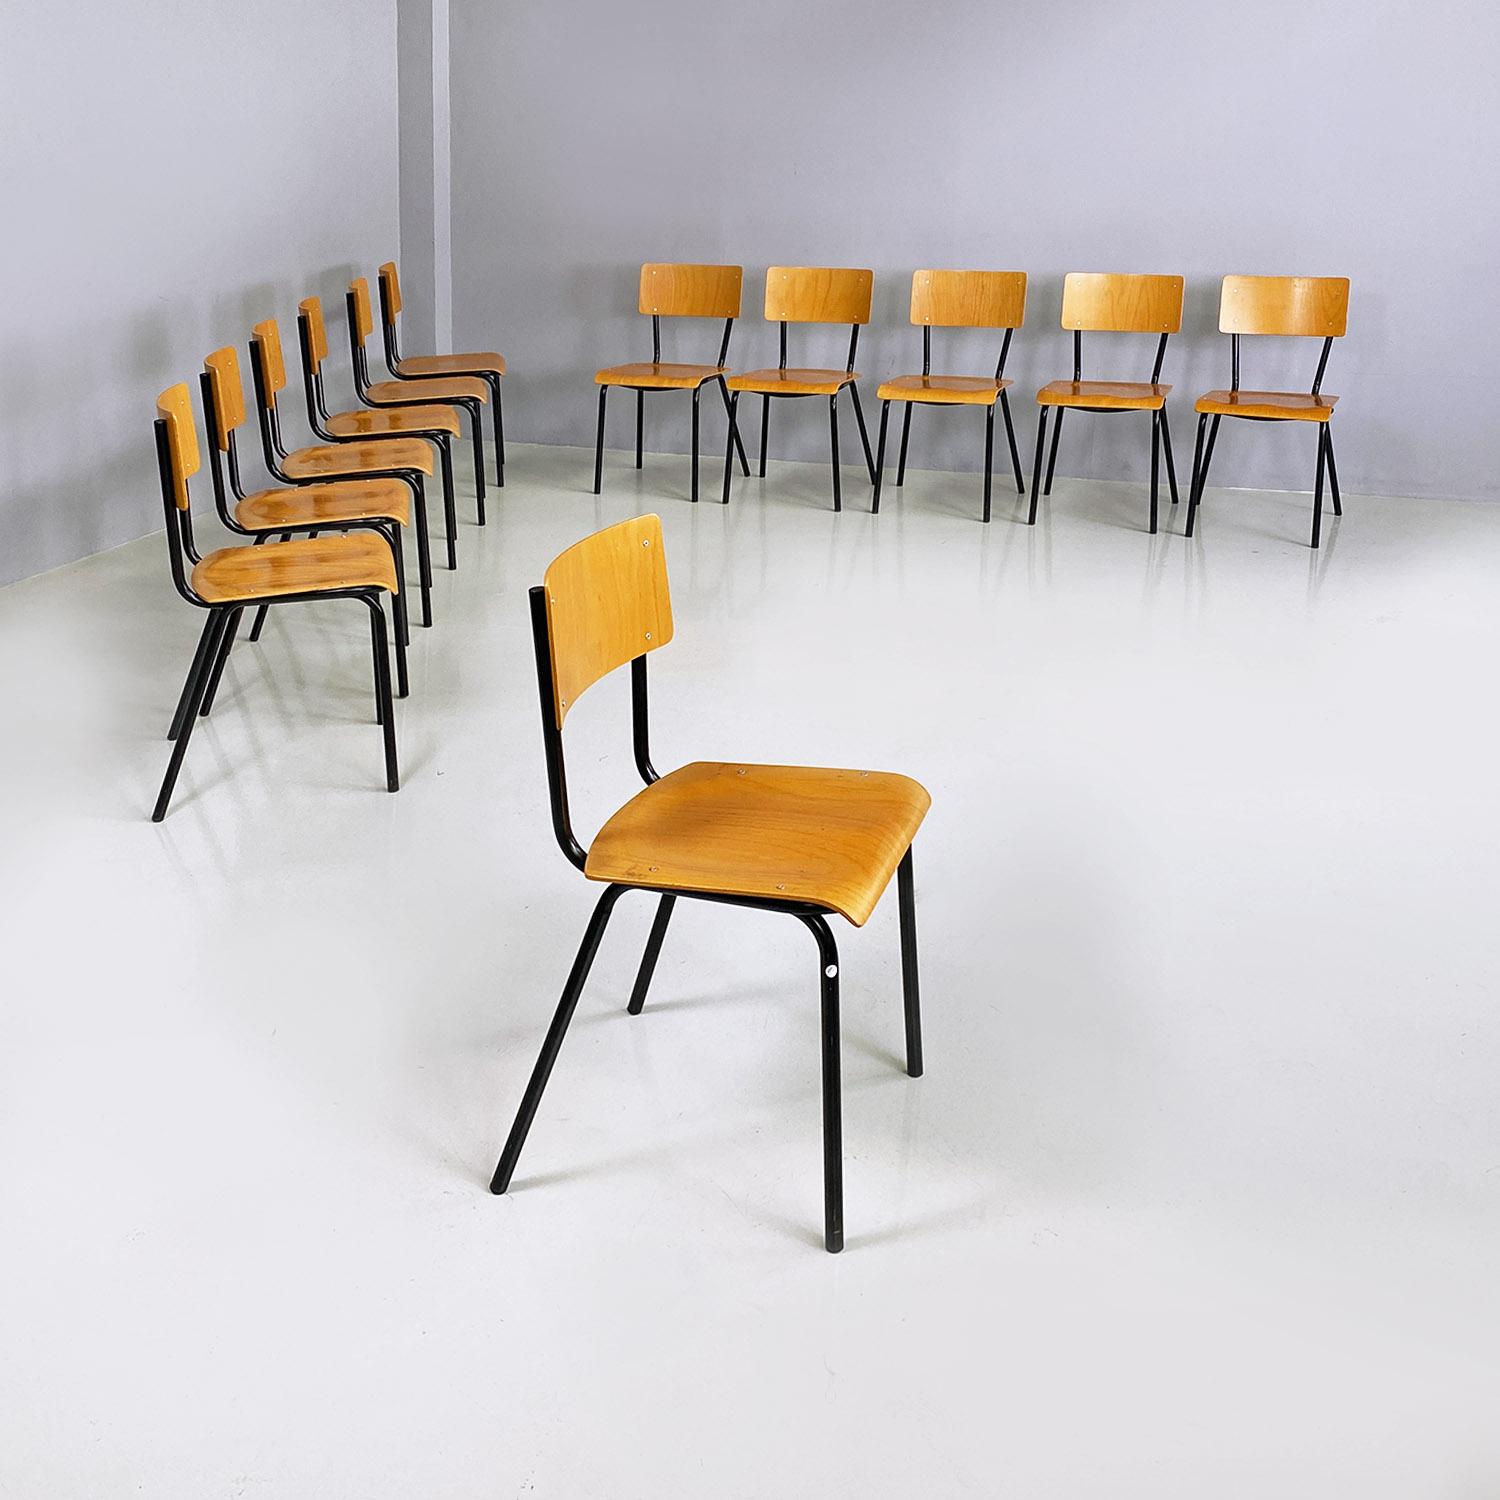 Chaises d'école italiennes du milieu du siècle en hêtre et métal tubolaire noir, années 1960.
Ensemble de douze chaises avec assise et dossier en bois de hêtre et structure en tiges de métal noir.
1960 environ.
Bon état, plusieurs signes